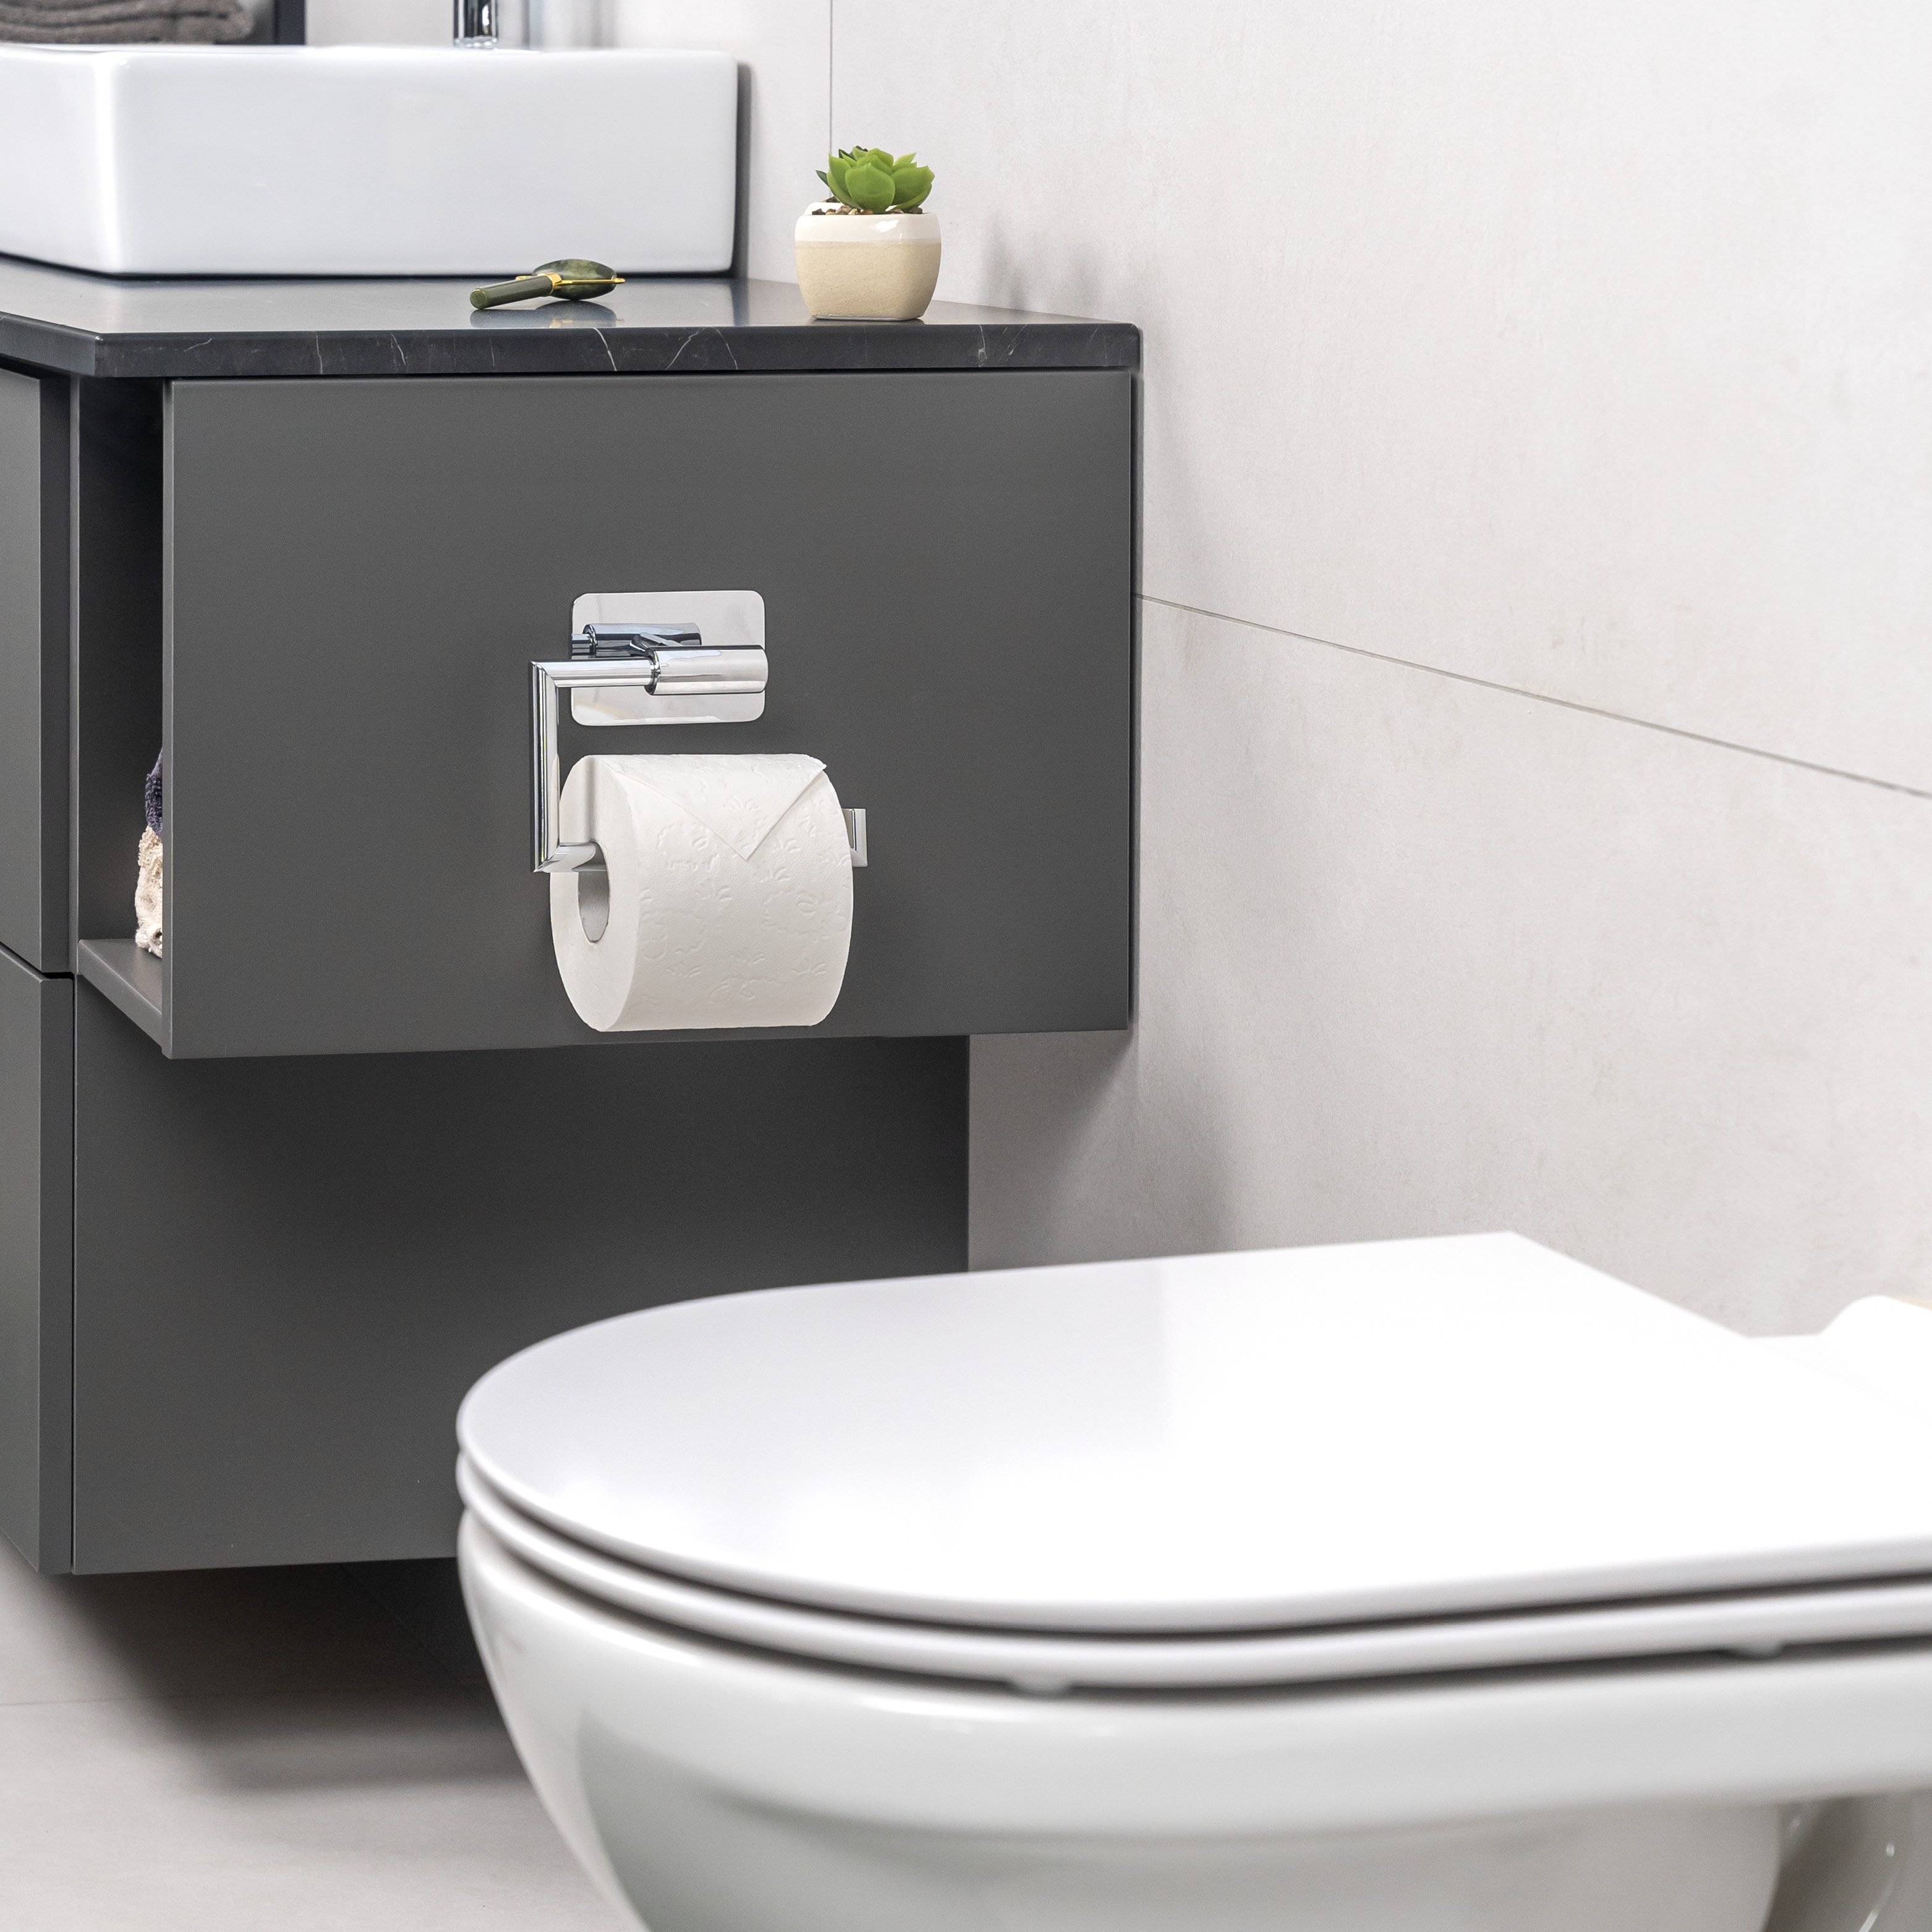 Bad-Serie LUCENTE TAPE - Toilettenpapierhalter, Papierrollenhalter selbstklebend Edelstahl, verchromt - kein Bohren 3M Klebebefestigung